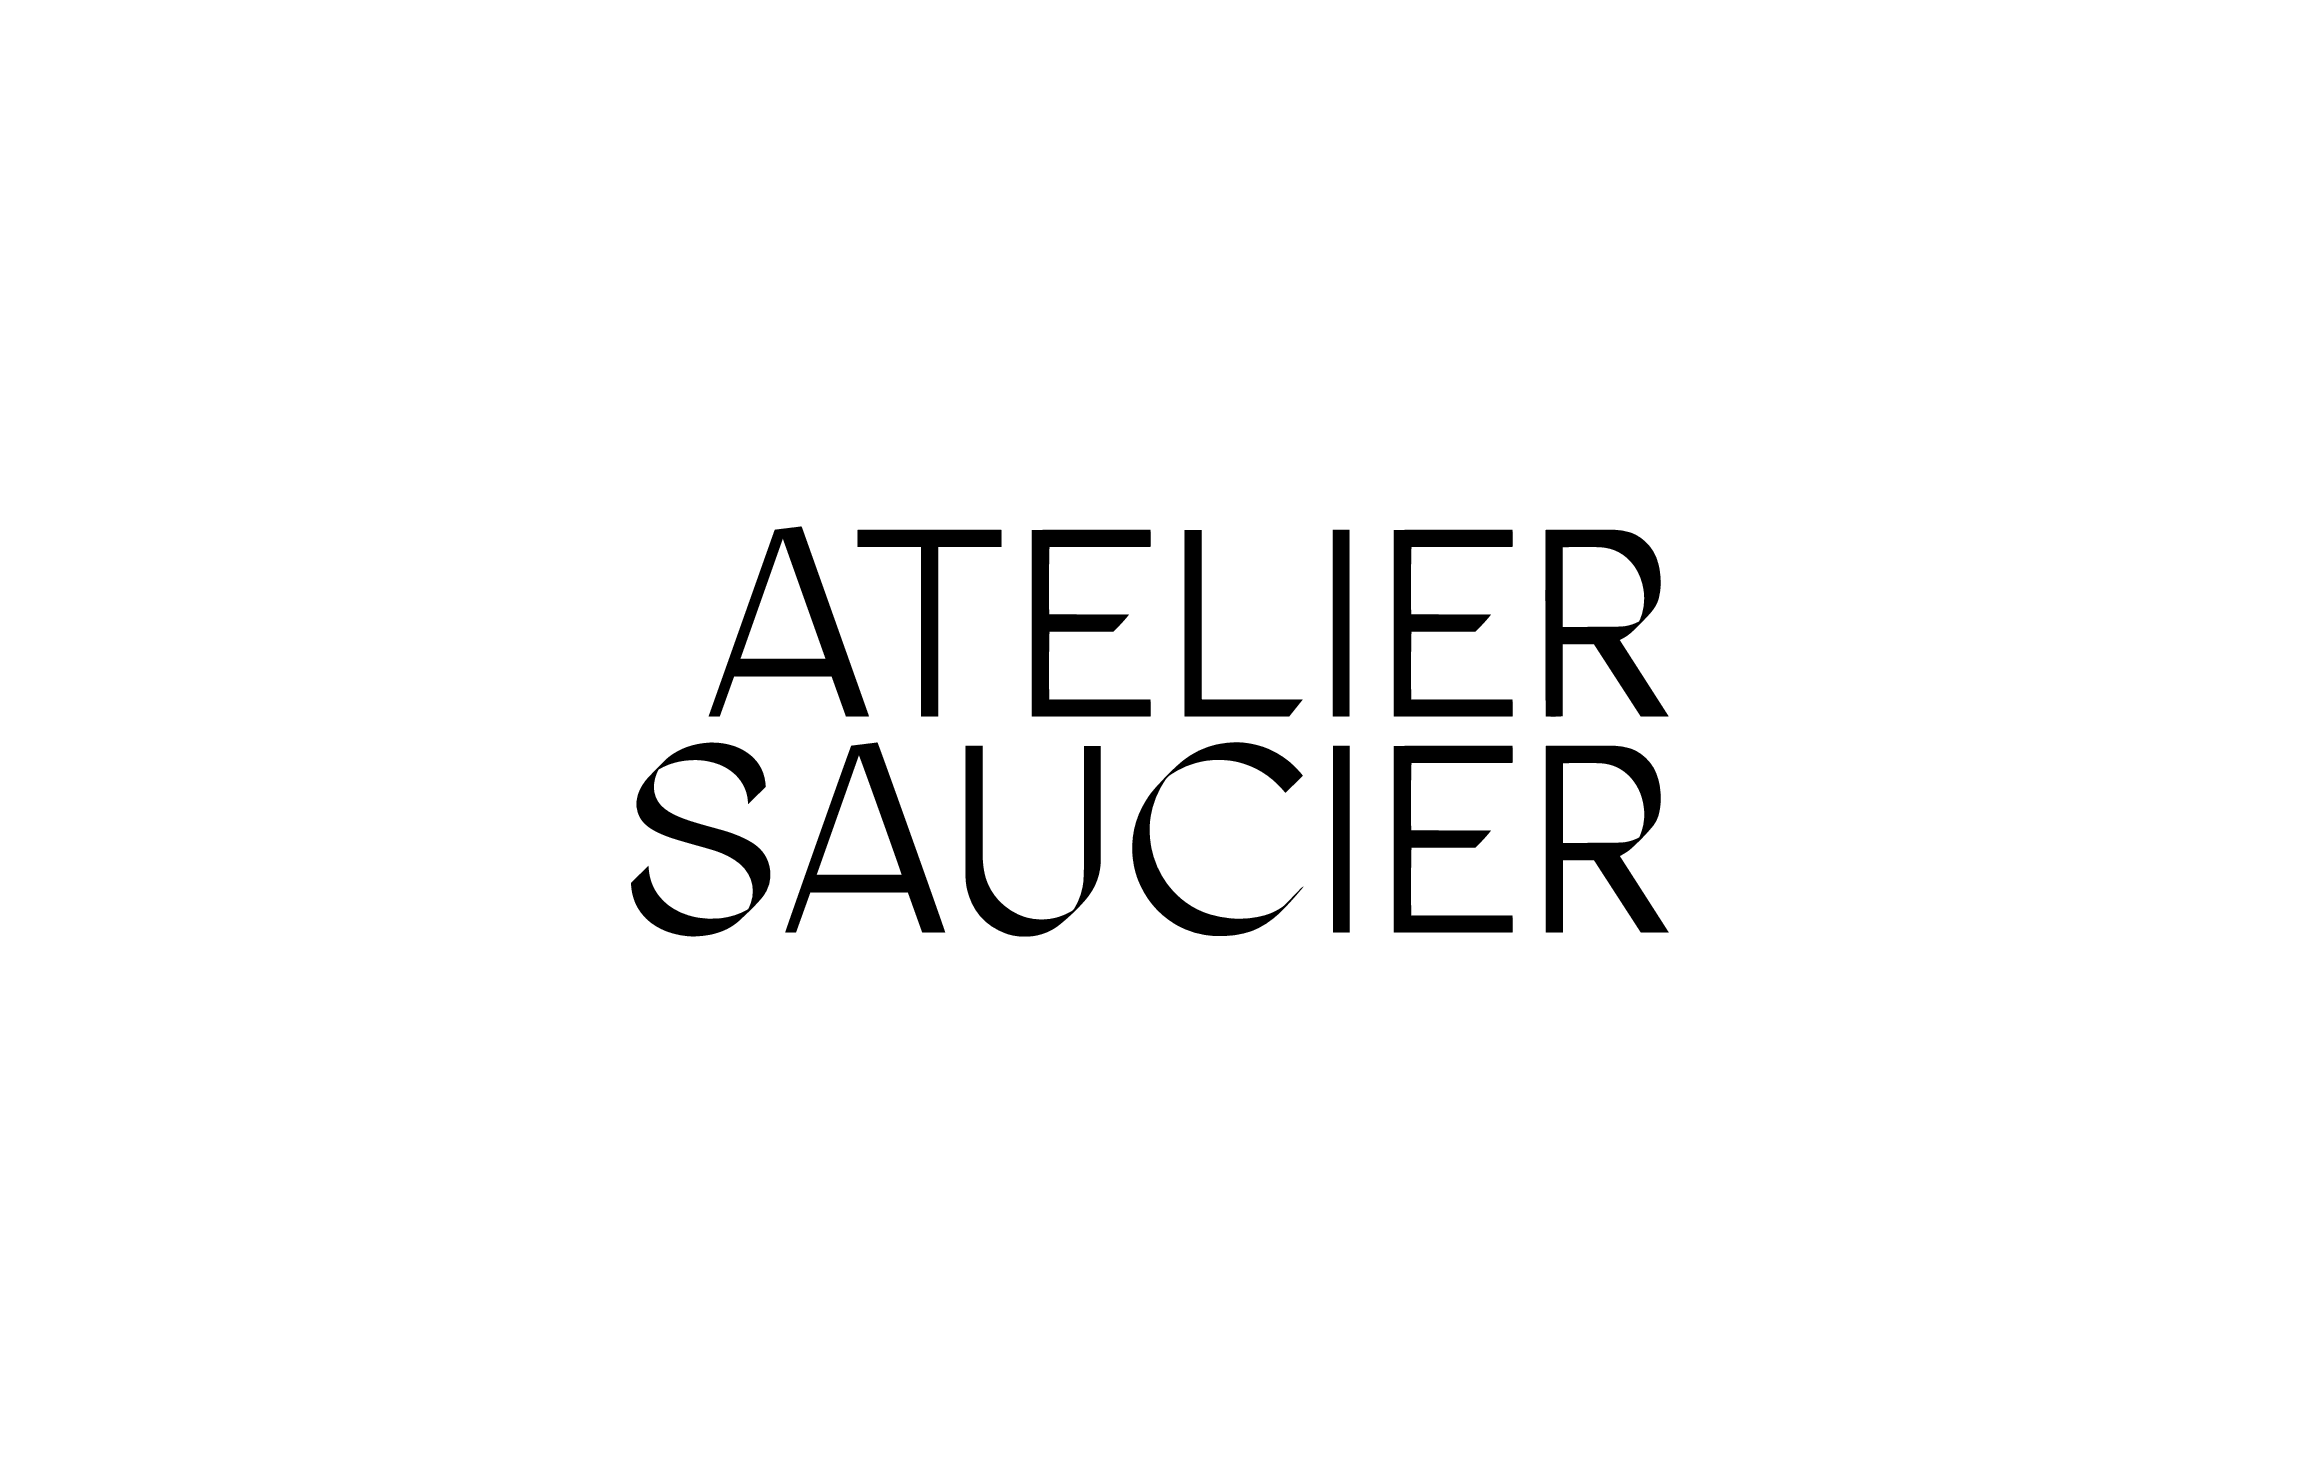 We Dress Up Your Table & Make It Saucier - ATELIER SAUCIER